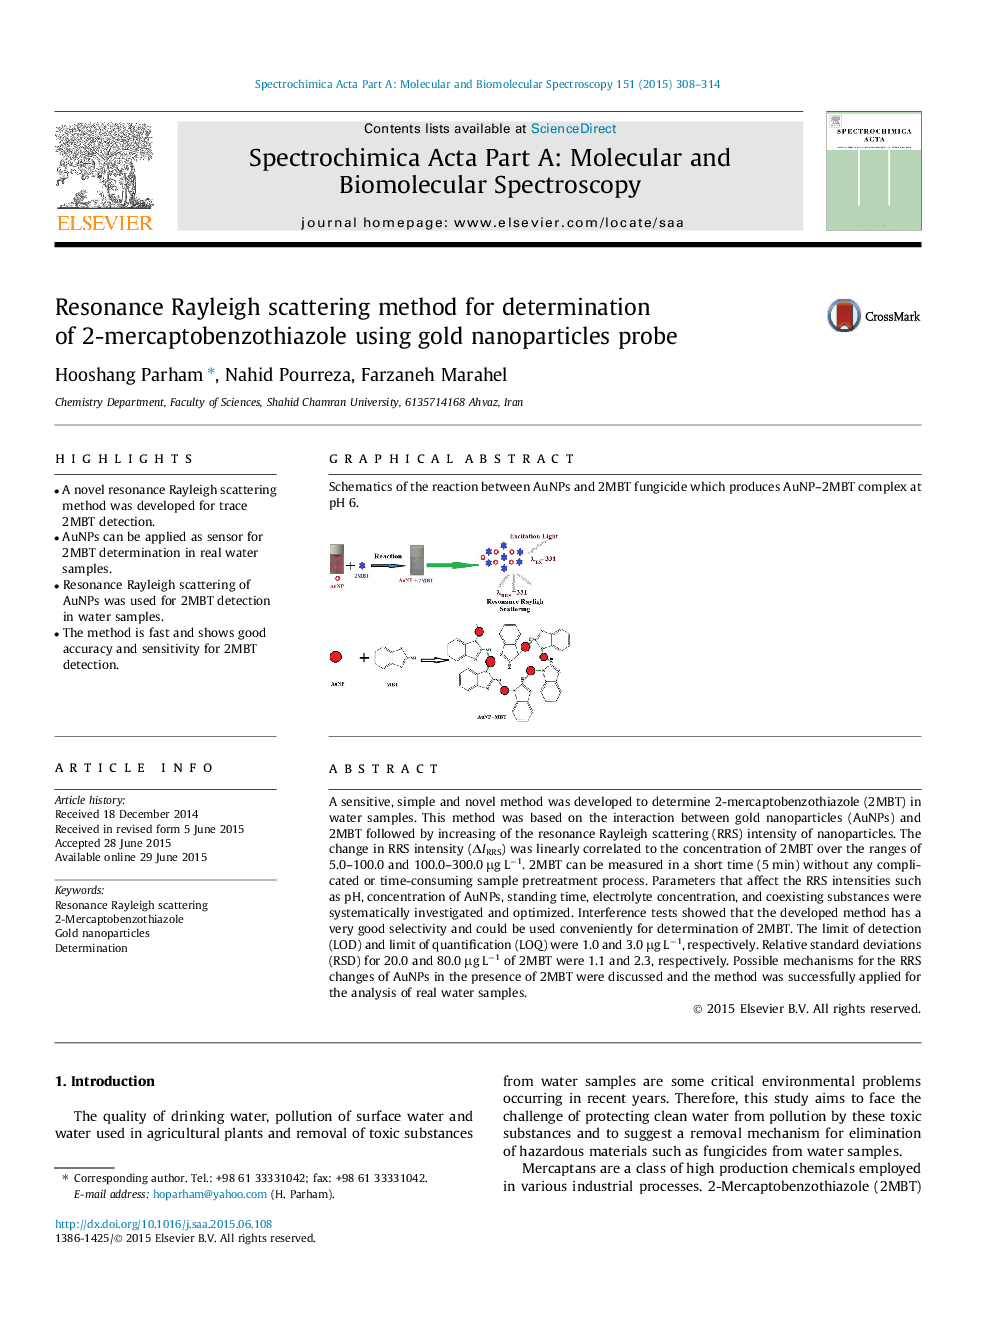 روش پراکندگی رزونانس ریلی برای تعیین 2-мерکارپتو بنتز تیتایزول با استفاده از پروب نانوذرات طلا 